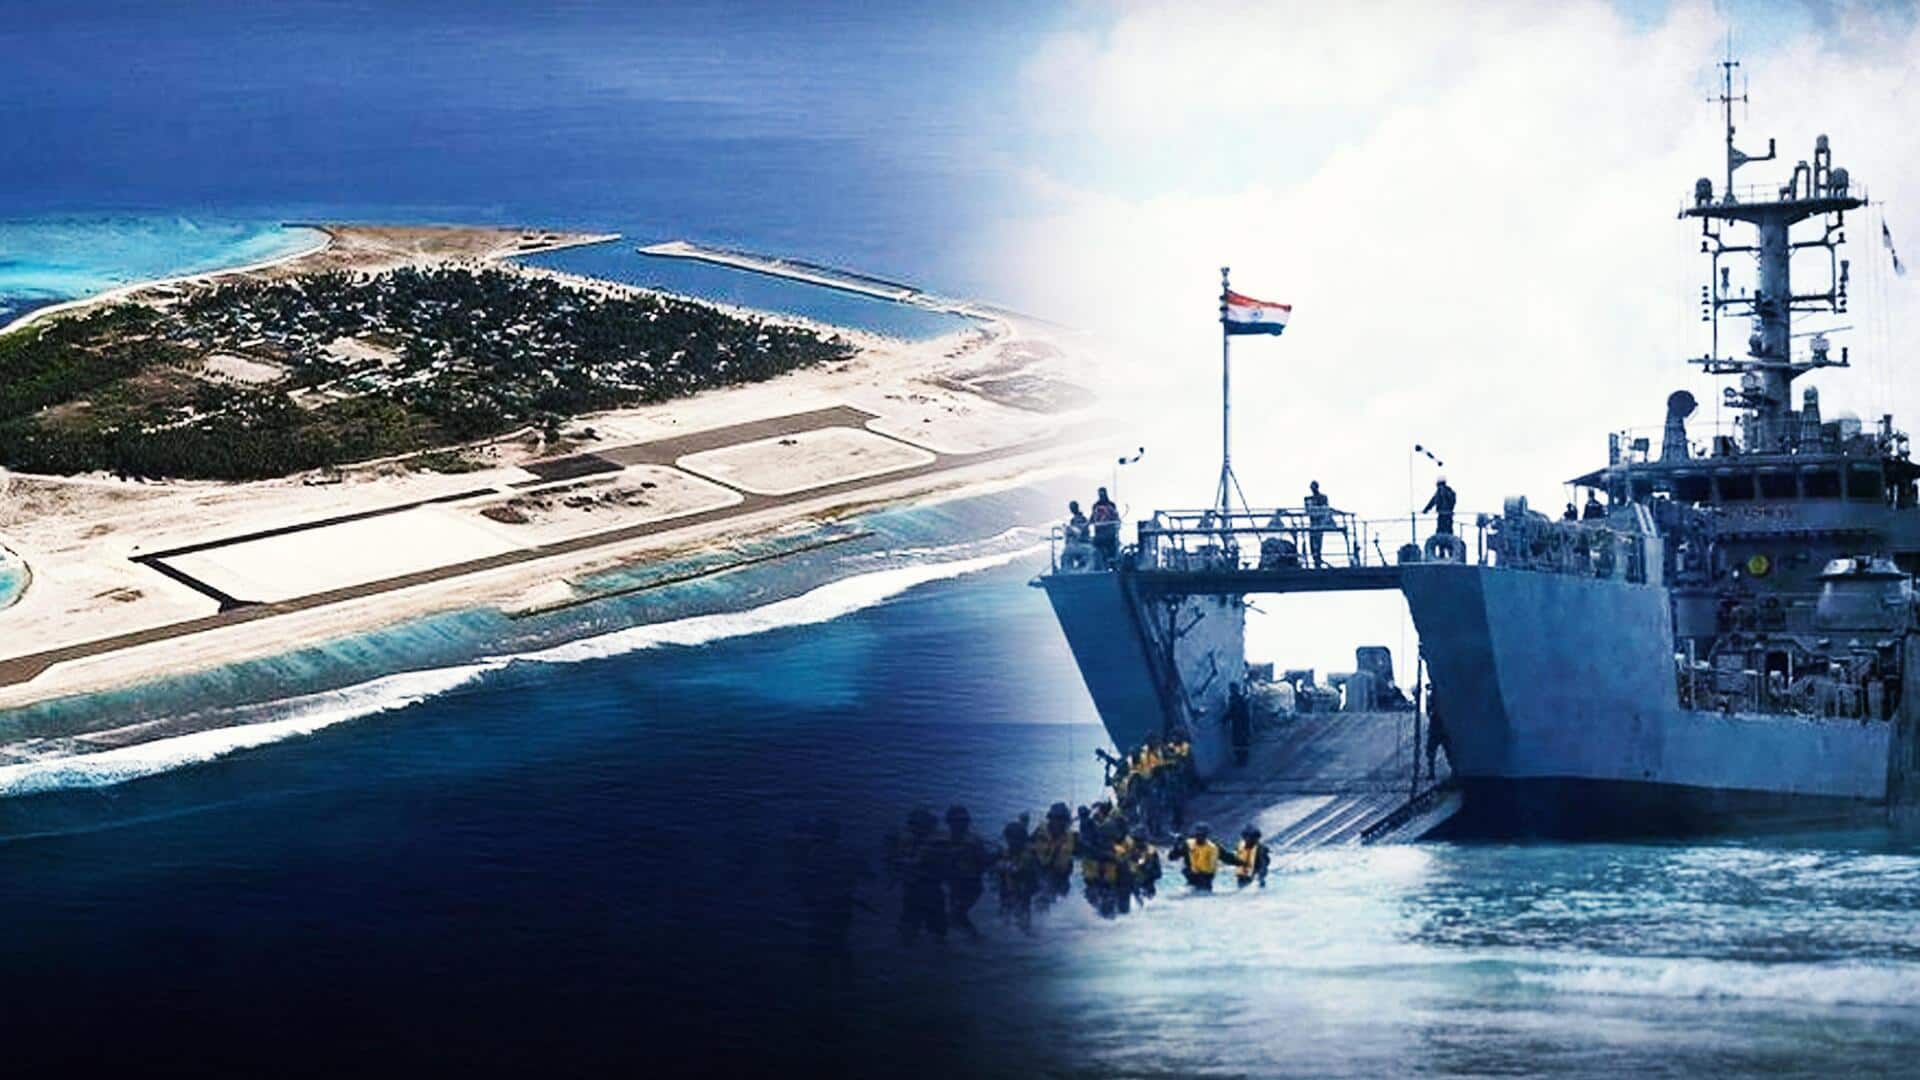 लक्षद्वीप में नौसैनिक अड्डा बनाएगा भारत, अगले हफ्ते हो सकता है उद्घाटन